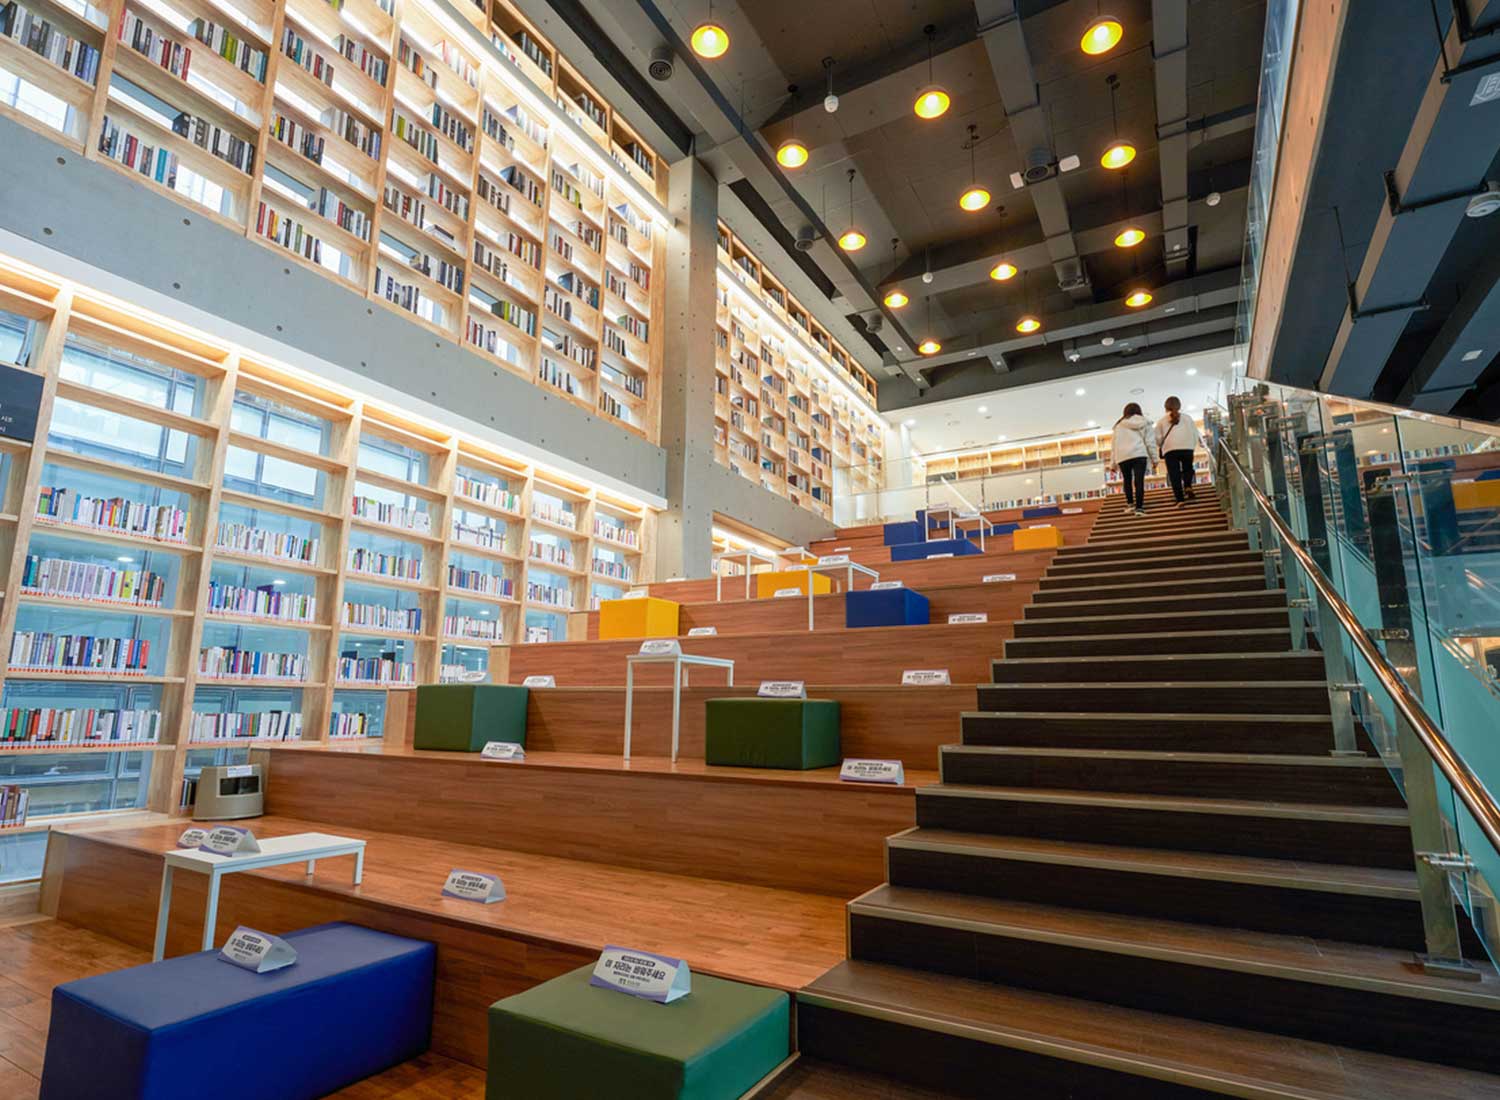 Área de estar em escada na biblioteca de Busan